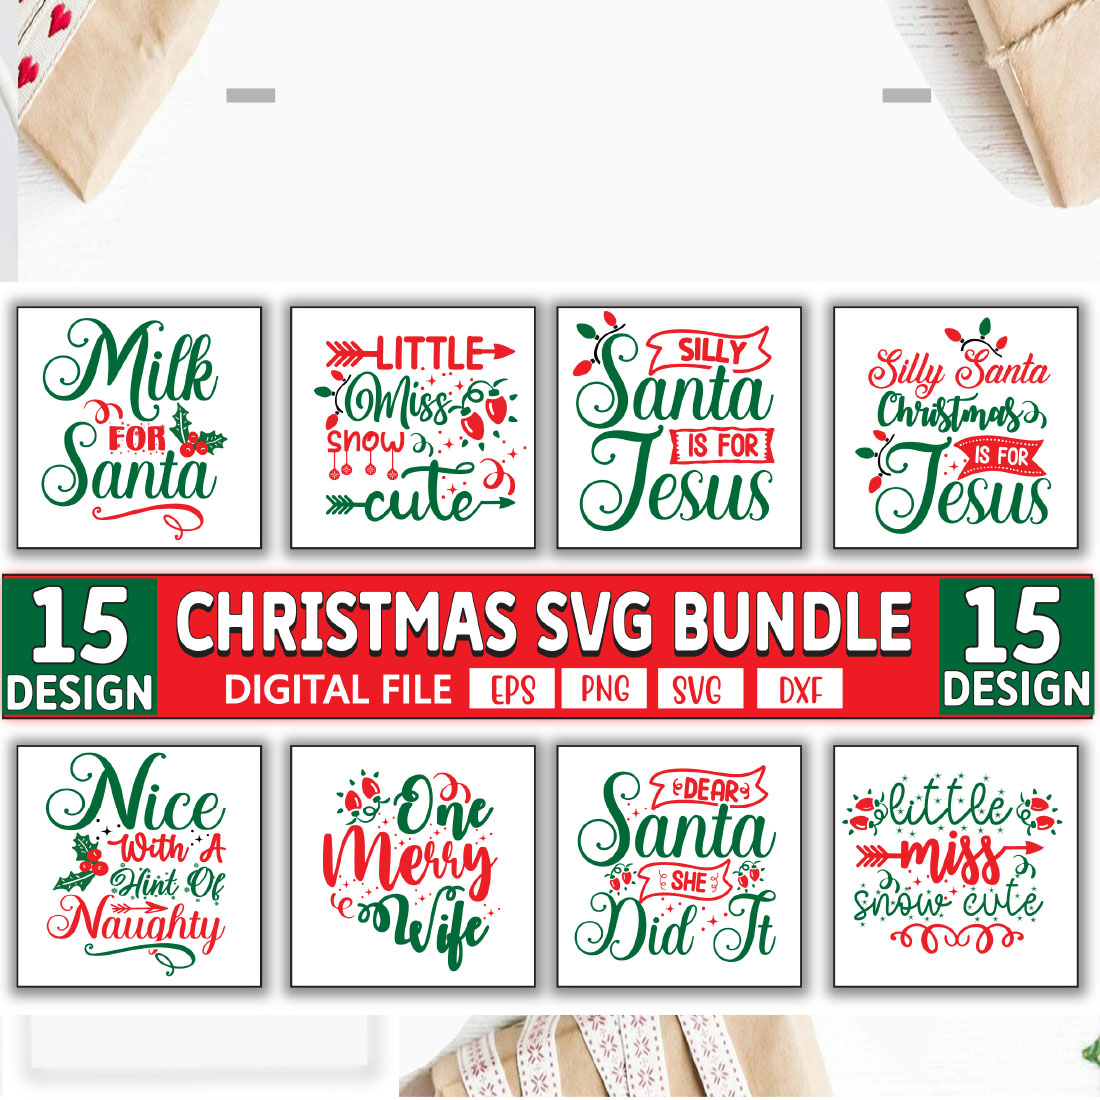 Big SVG Bundle with 15 Christmas designs.